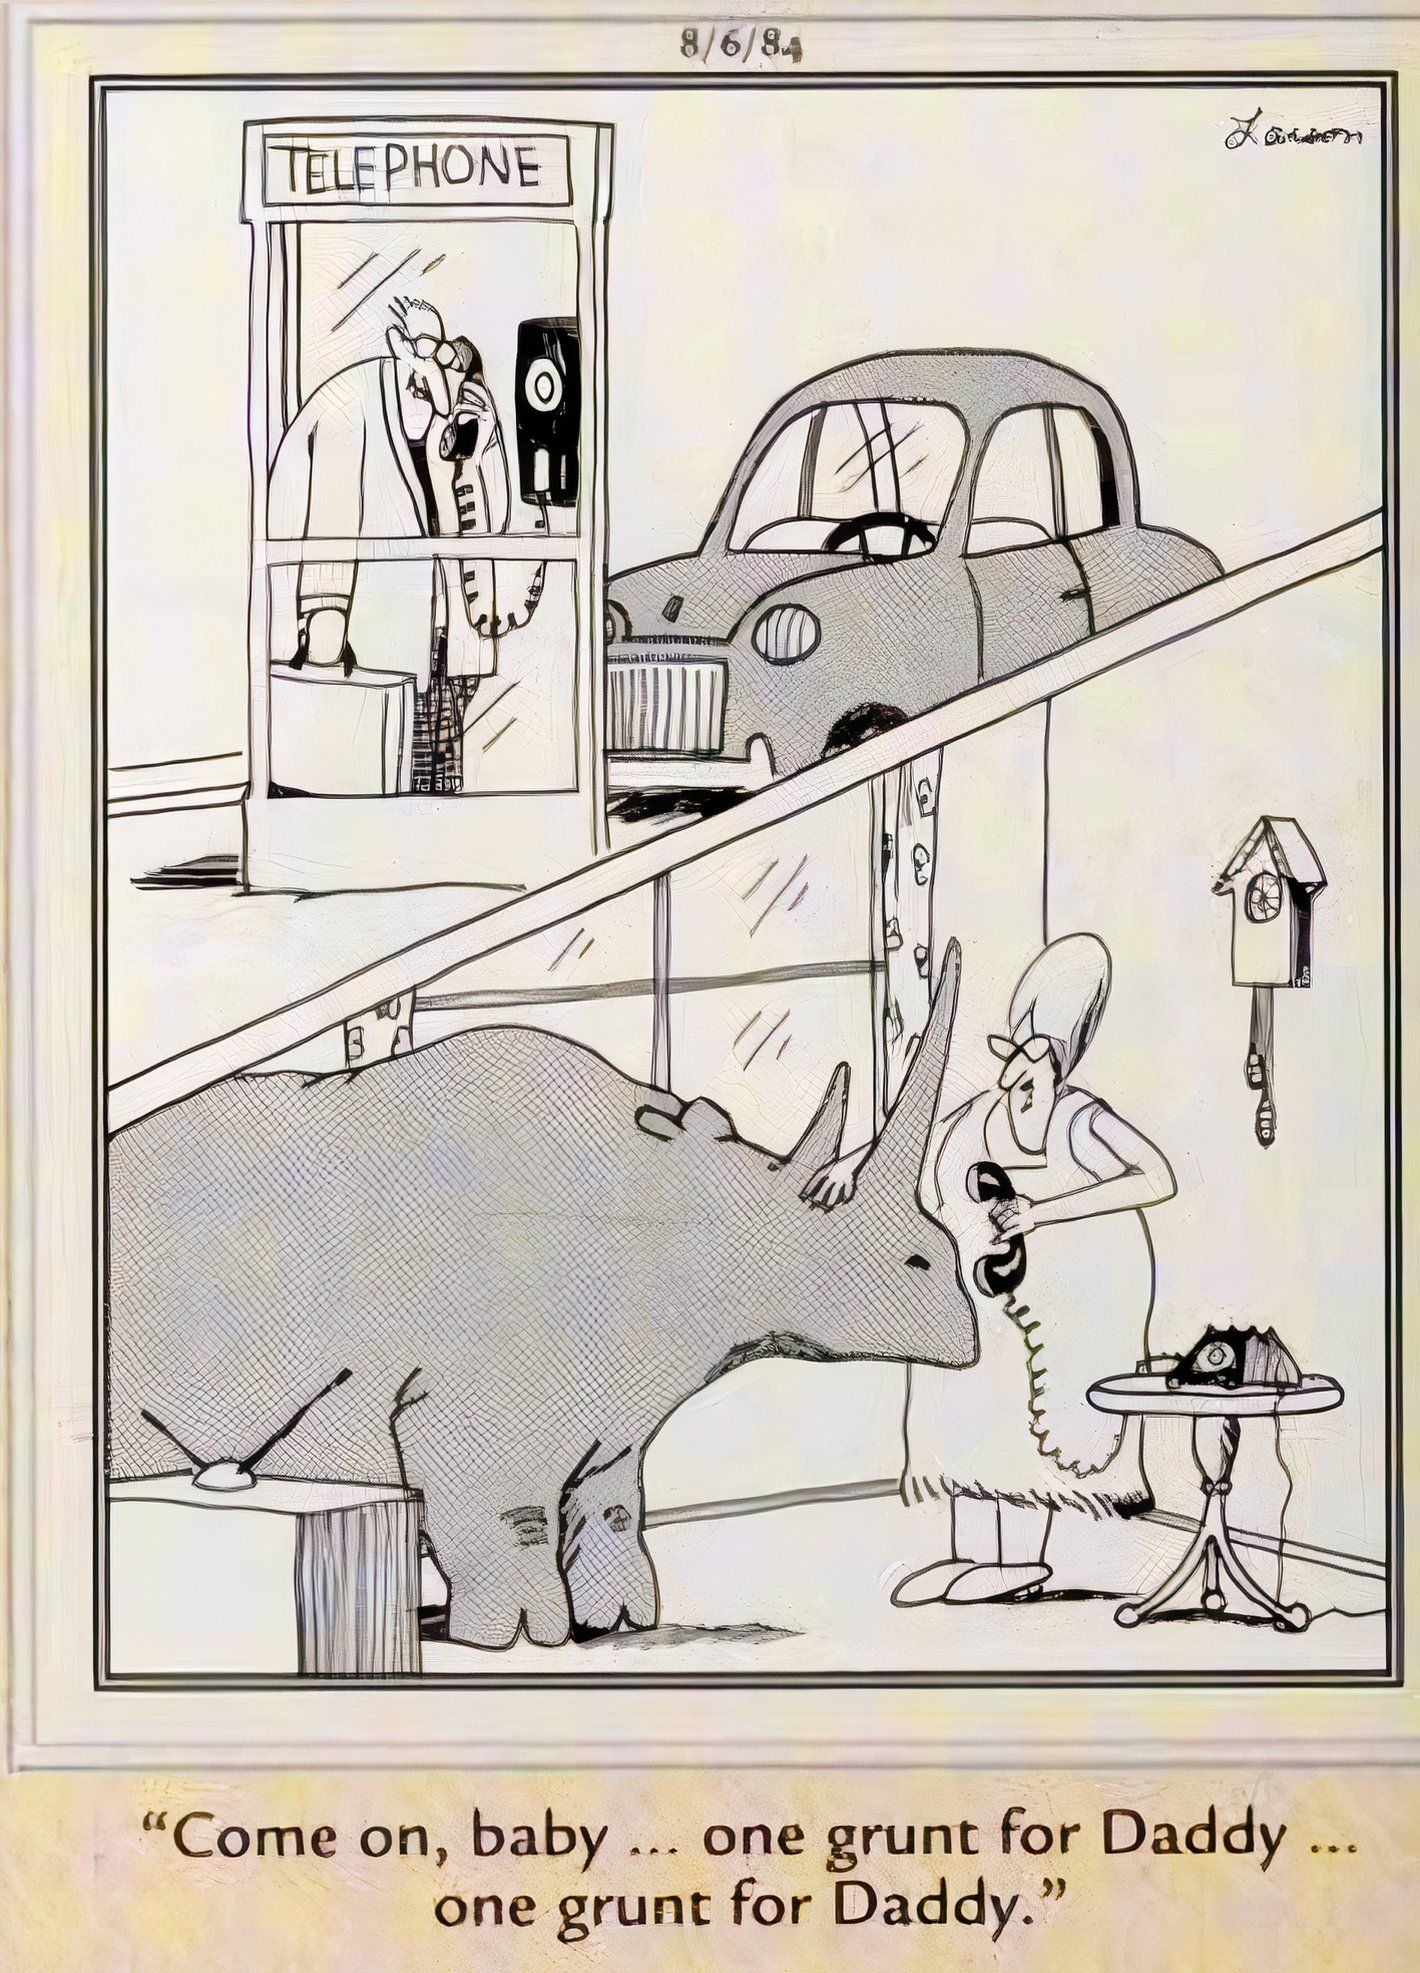 Far Side, 6 de agosto de 1984, imagem dividida de um homem em uma cabine telefônica enquanto a esposa segura o telefone para seu rinoceronte de estimação